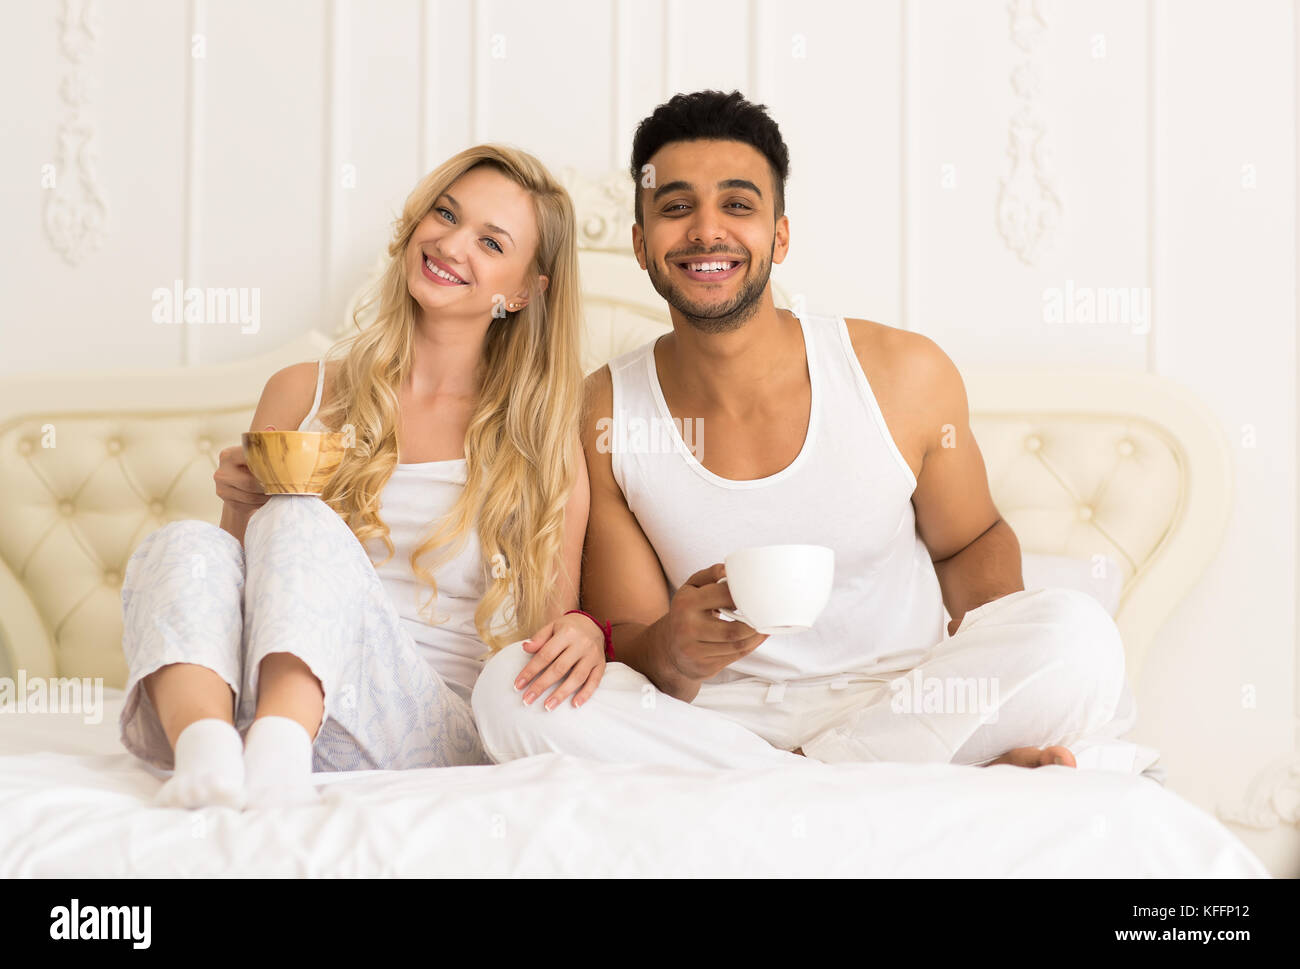 Junges Paar Kaffee trinken Orangensaft im Bett sitzend, glückliches Lächeln junger spanischer Mann und Frau Stockfoto